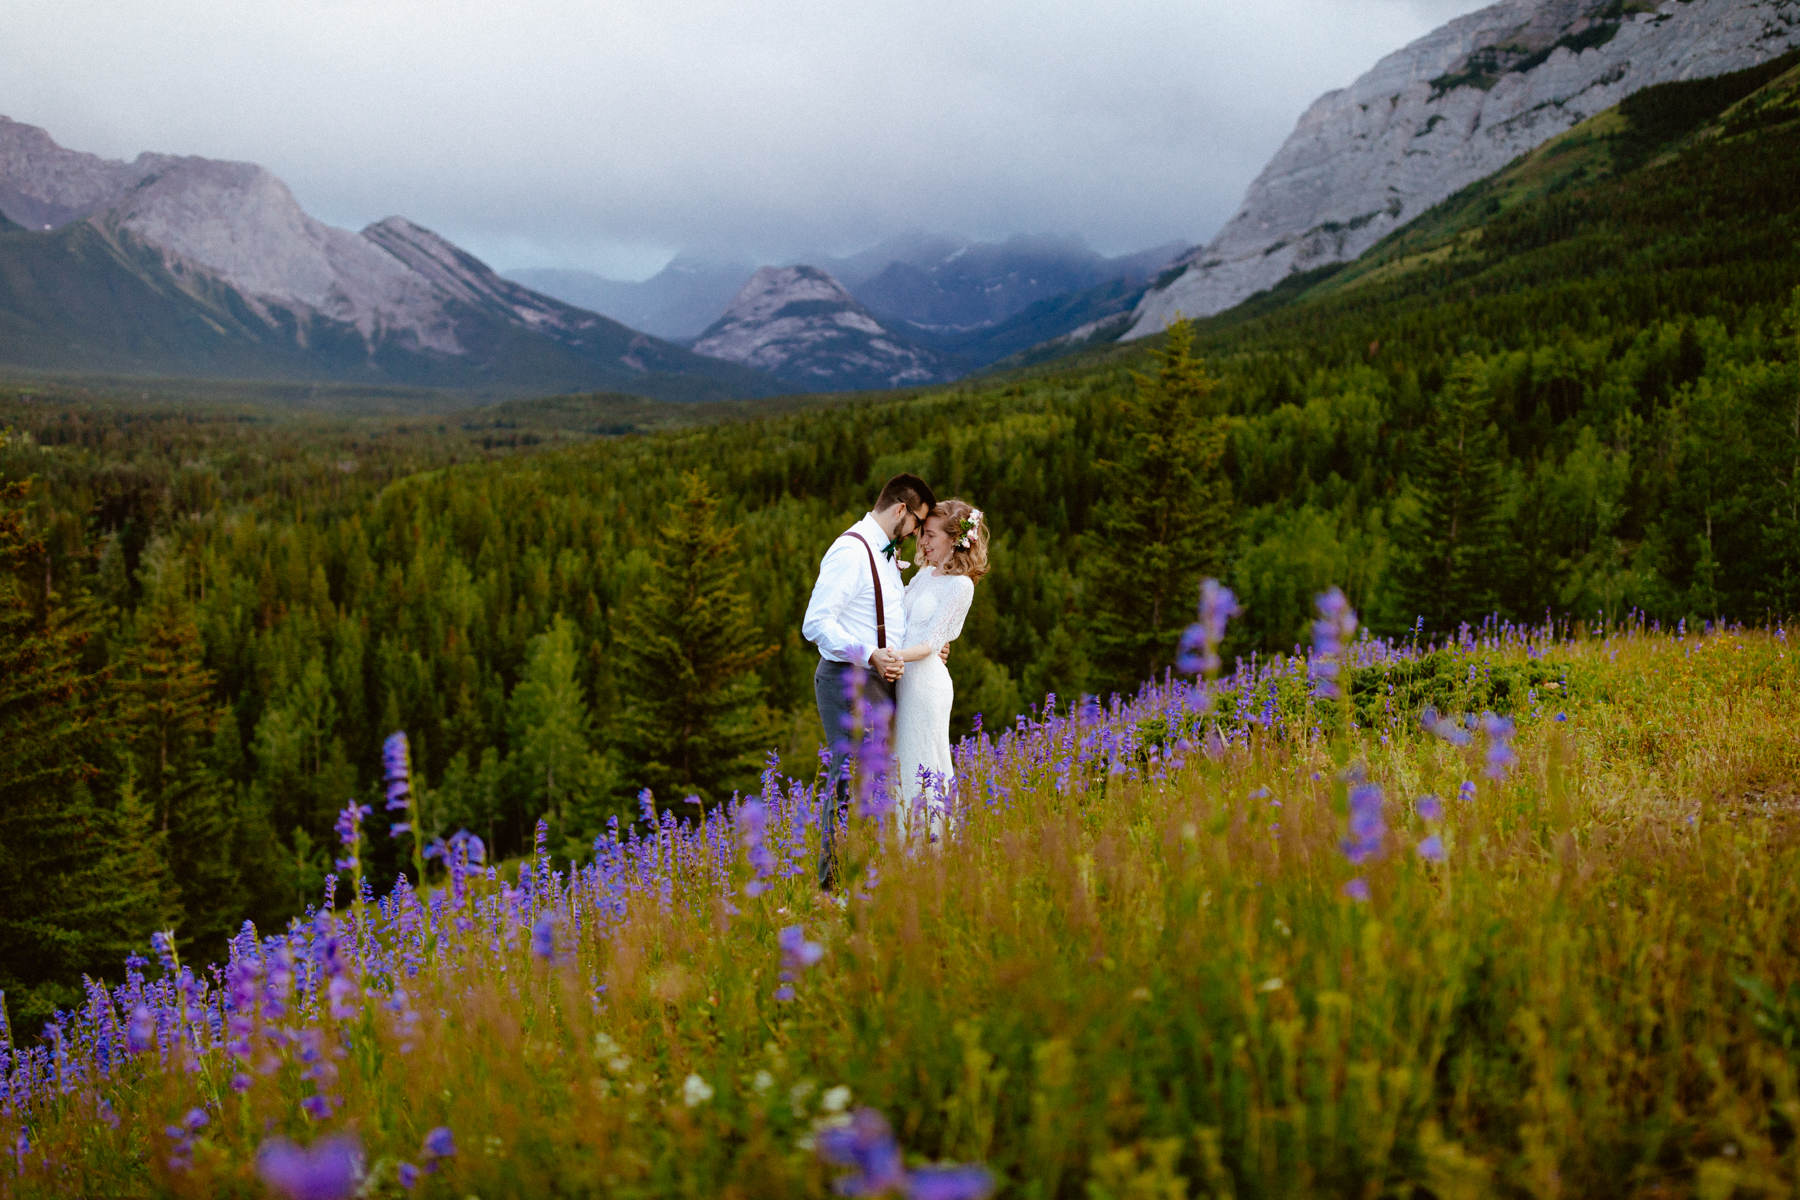 Kananaskis Wedding Photography at Pomeroy Mountain Lodge - Image 65